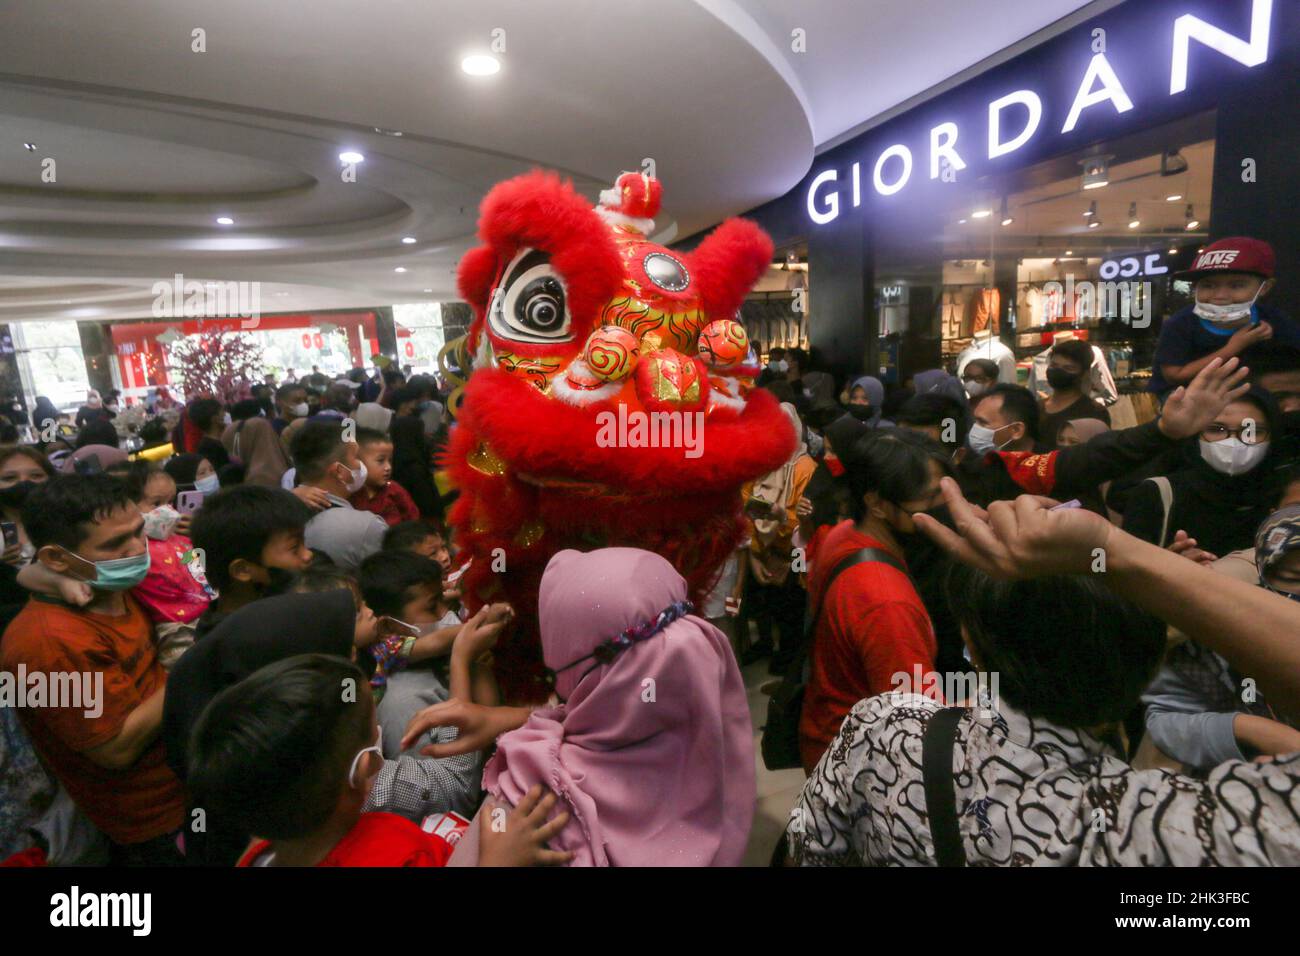 Les représentations des attractions cosplay 'Barongsai' et 'sungo Kong' divertissent les visiteurs dans un centre commercial en Indonésie, pour célébrer le nouvel an chinois Banque D'Images